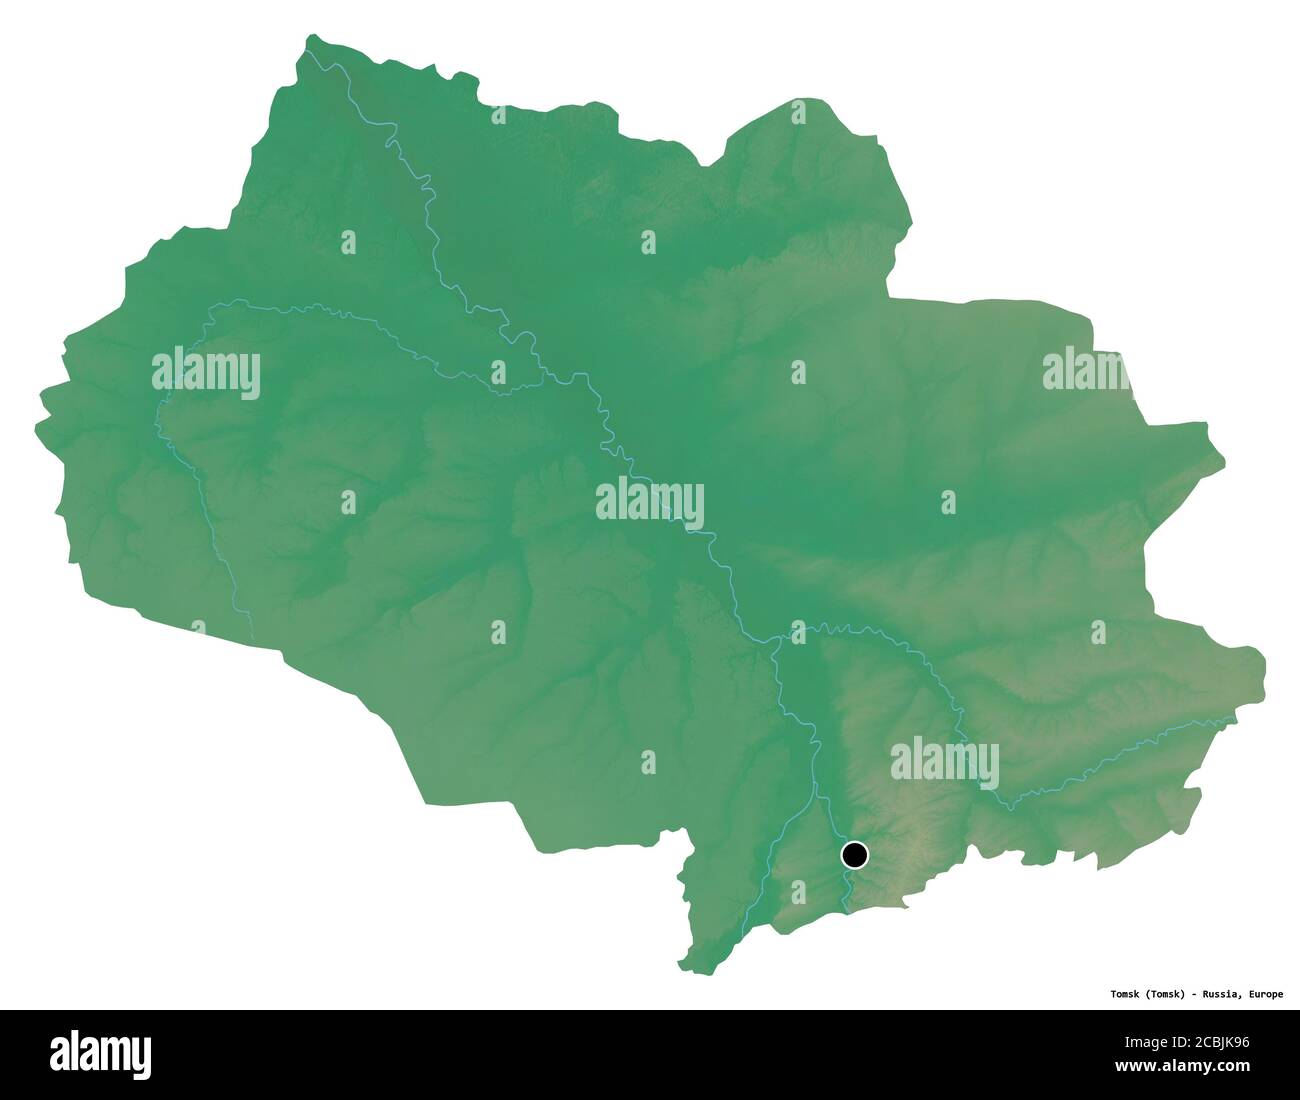 Forme de Tomsk, région de Russie, avec sa capitale isolée sur fond blanc. Carte topographique de relief. Rendu 3D Banque D'Images